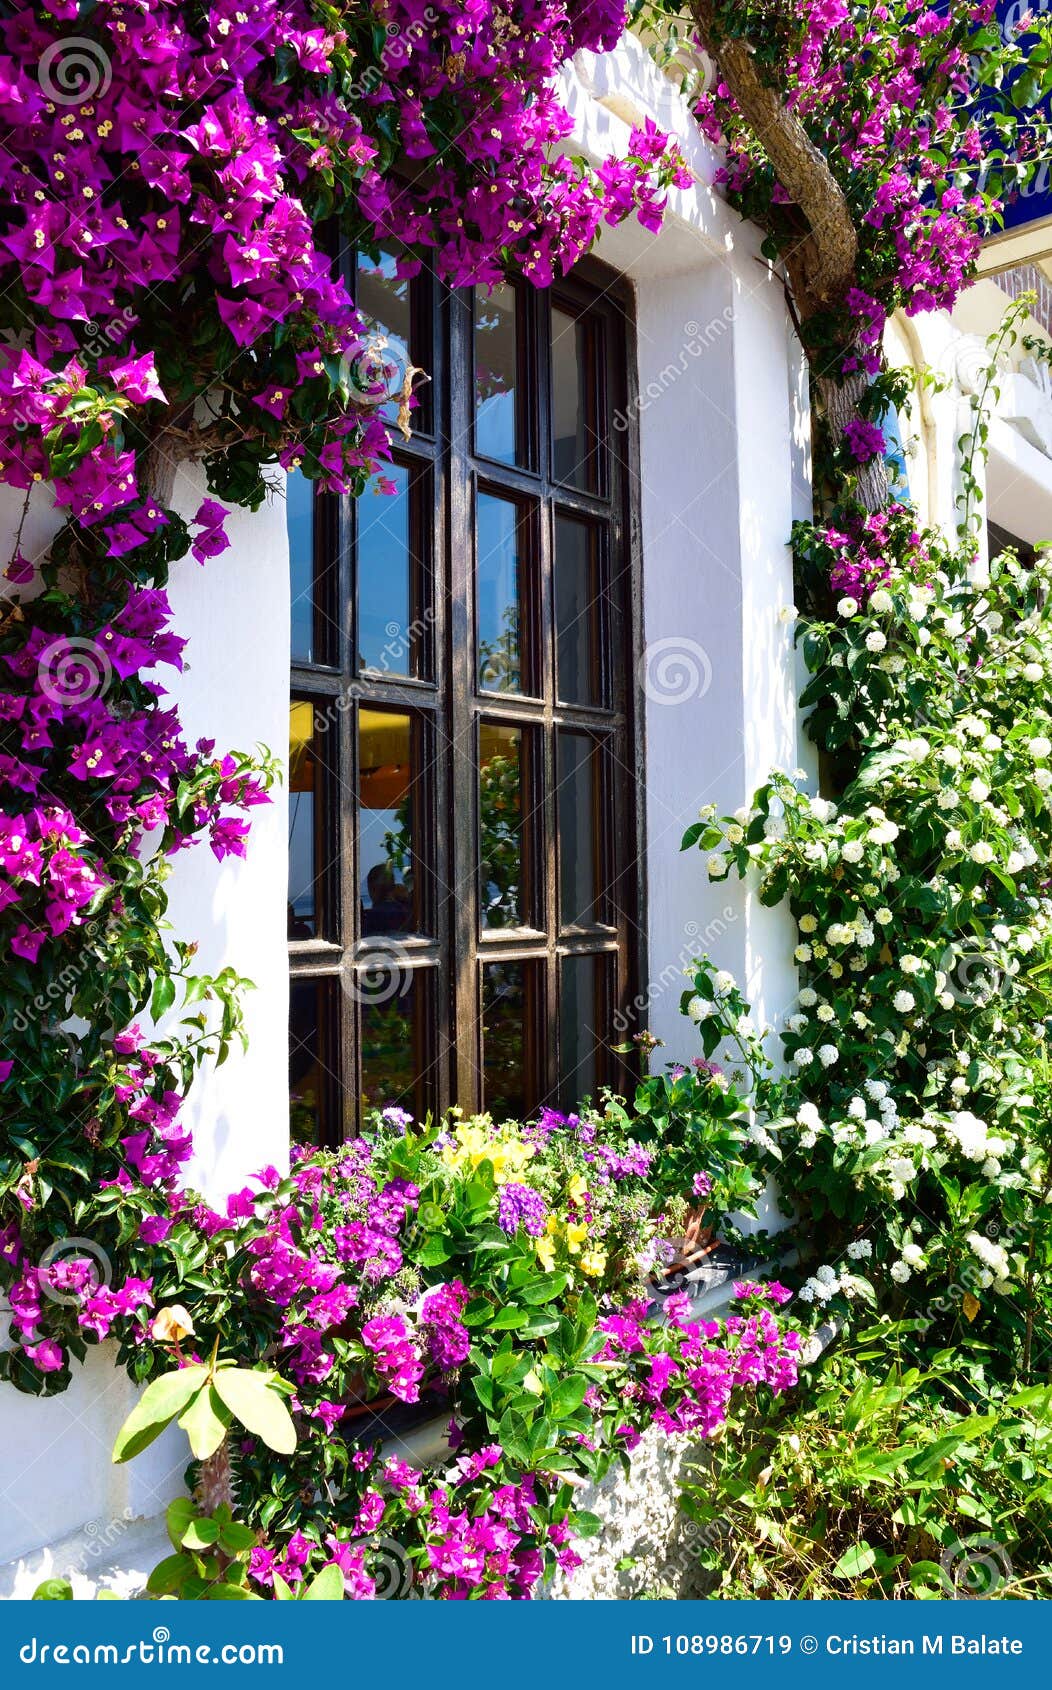 beautiful flower garden in santorini stock image - image of bloom